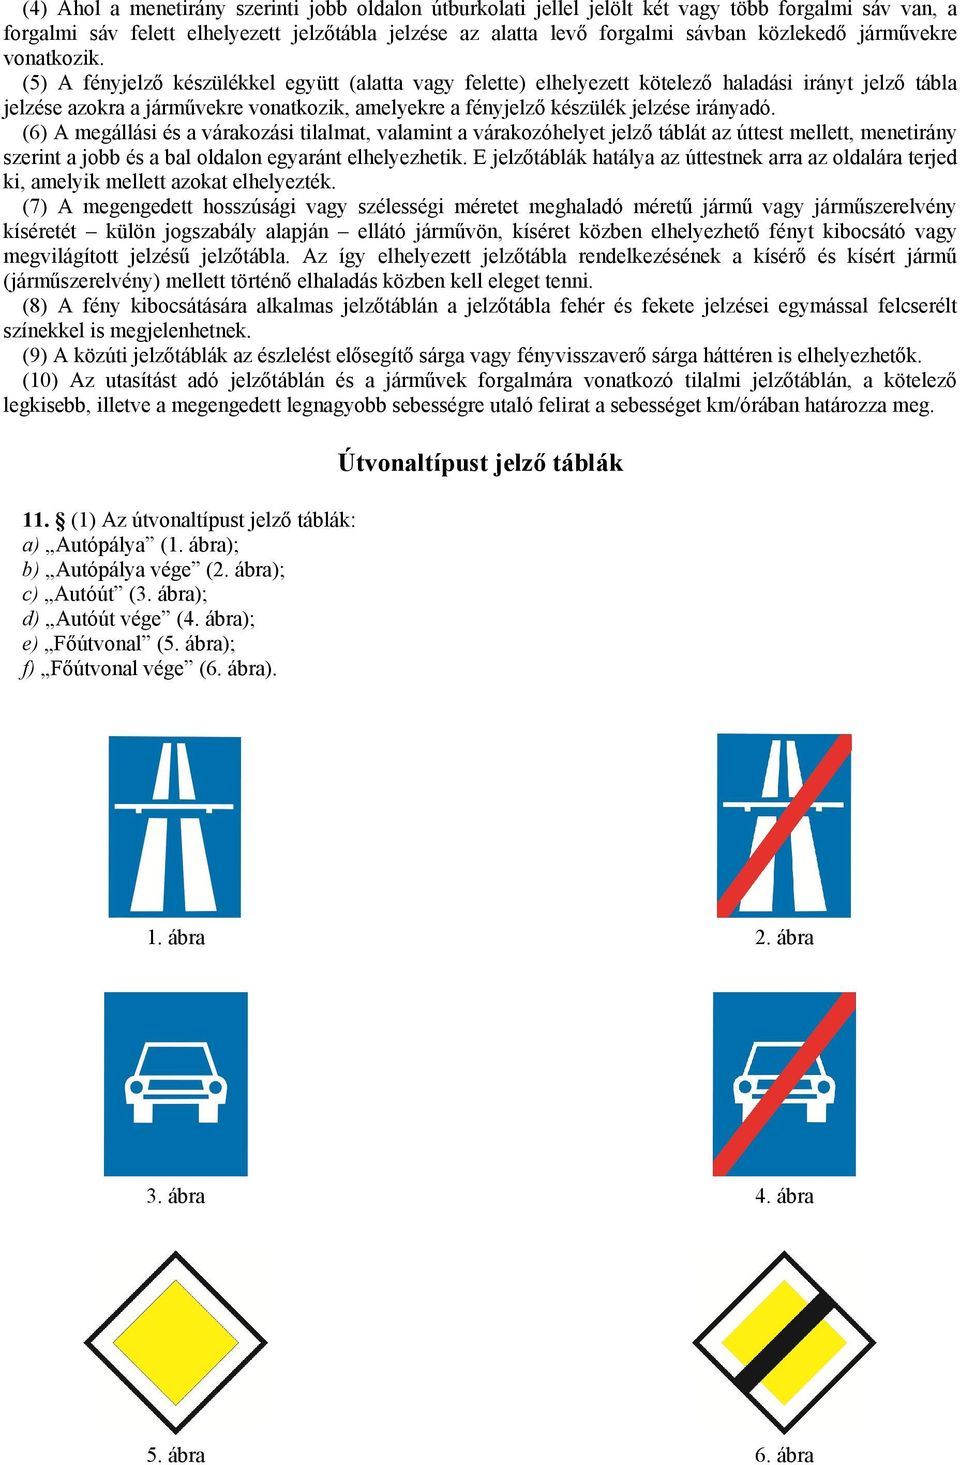 (5) A fényjelző készülékkel együtt (alatta vagy felette) elhelyezett kötelező haladási irányt jelző tábla jelzése azokra a járművekre vonatkozik, amelyekre a fényjelző készülék jelzése irányadó.